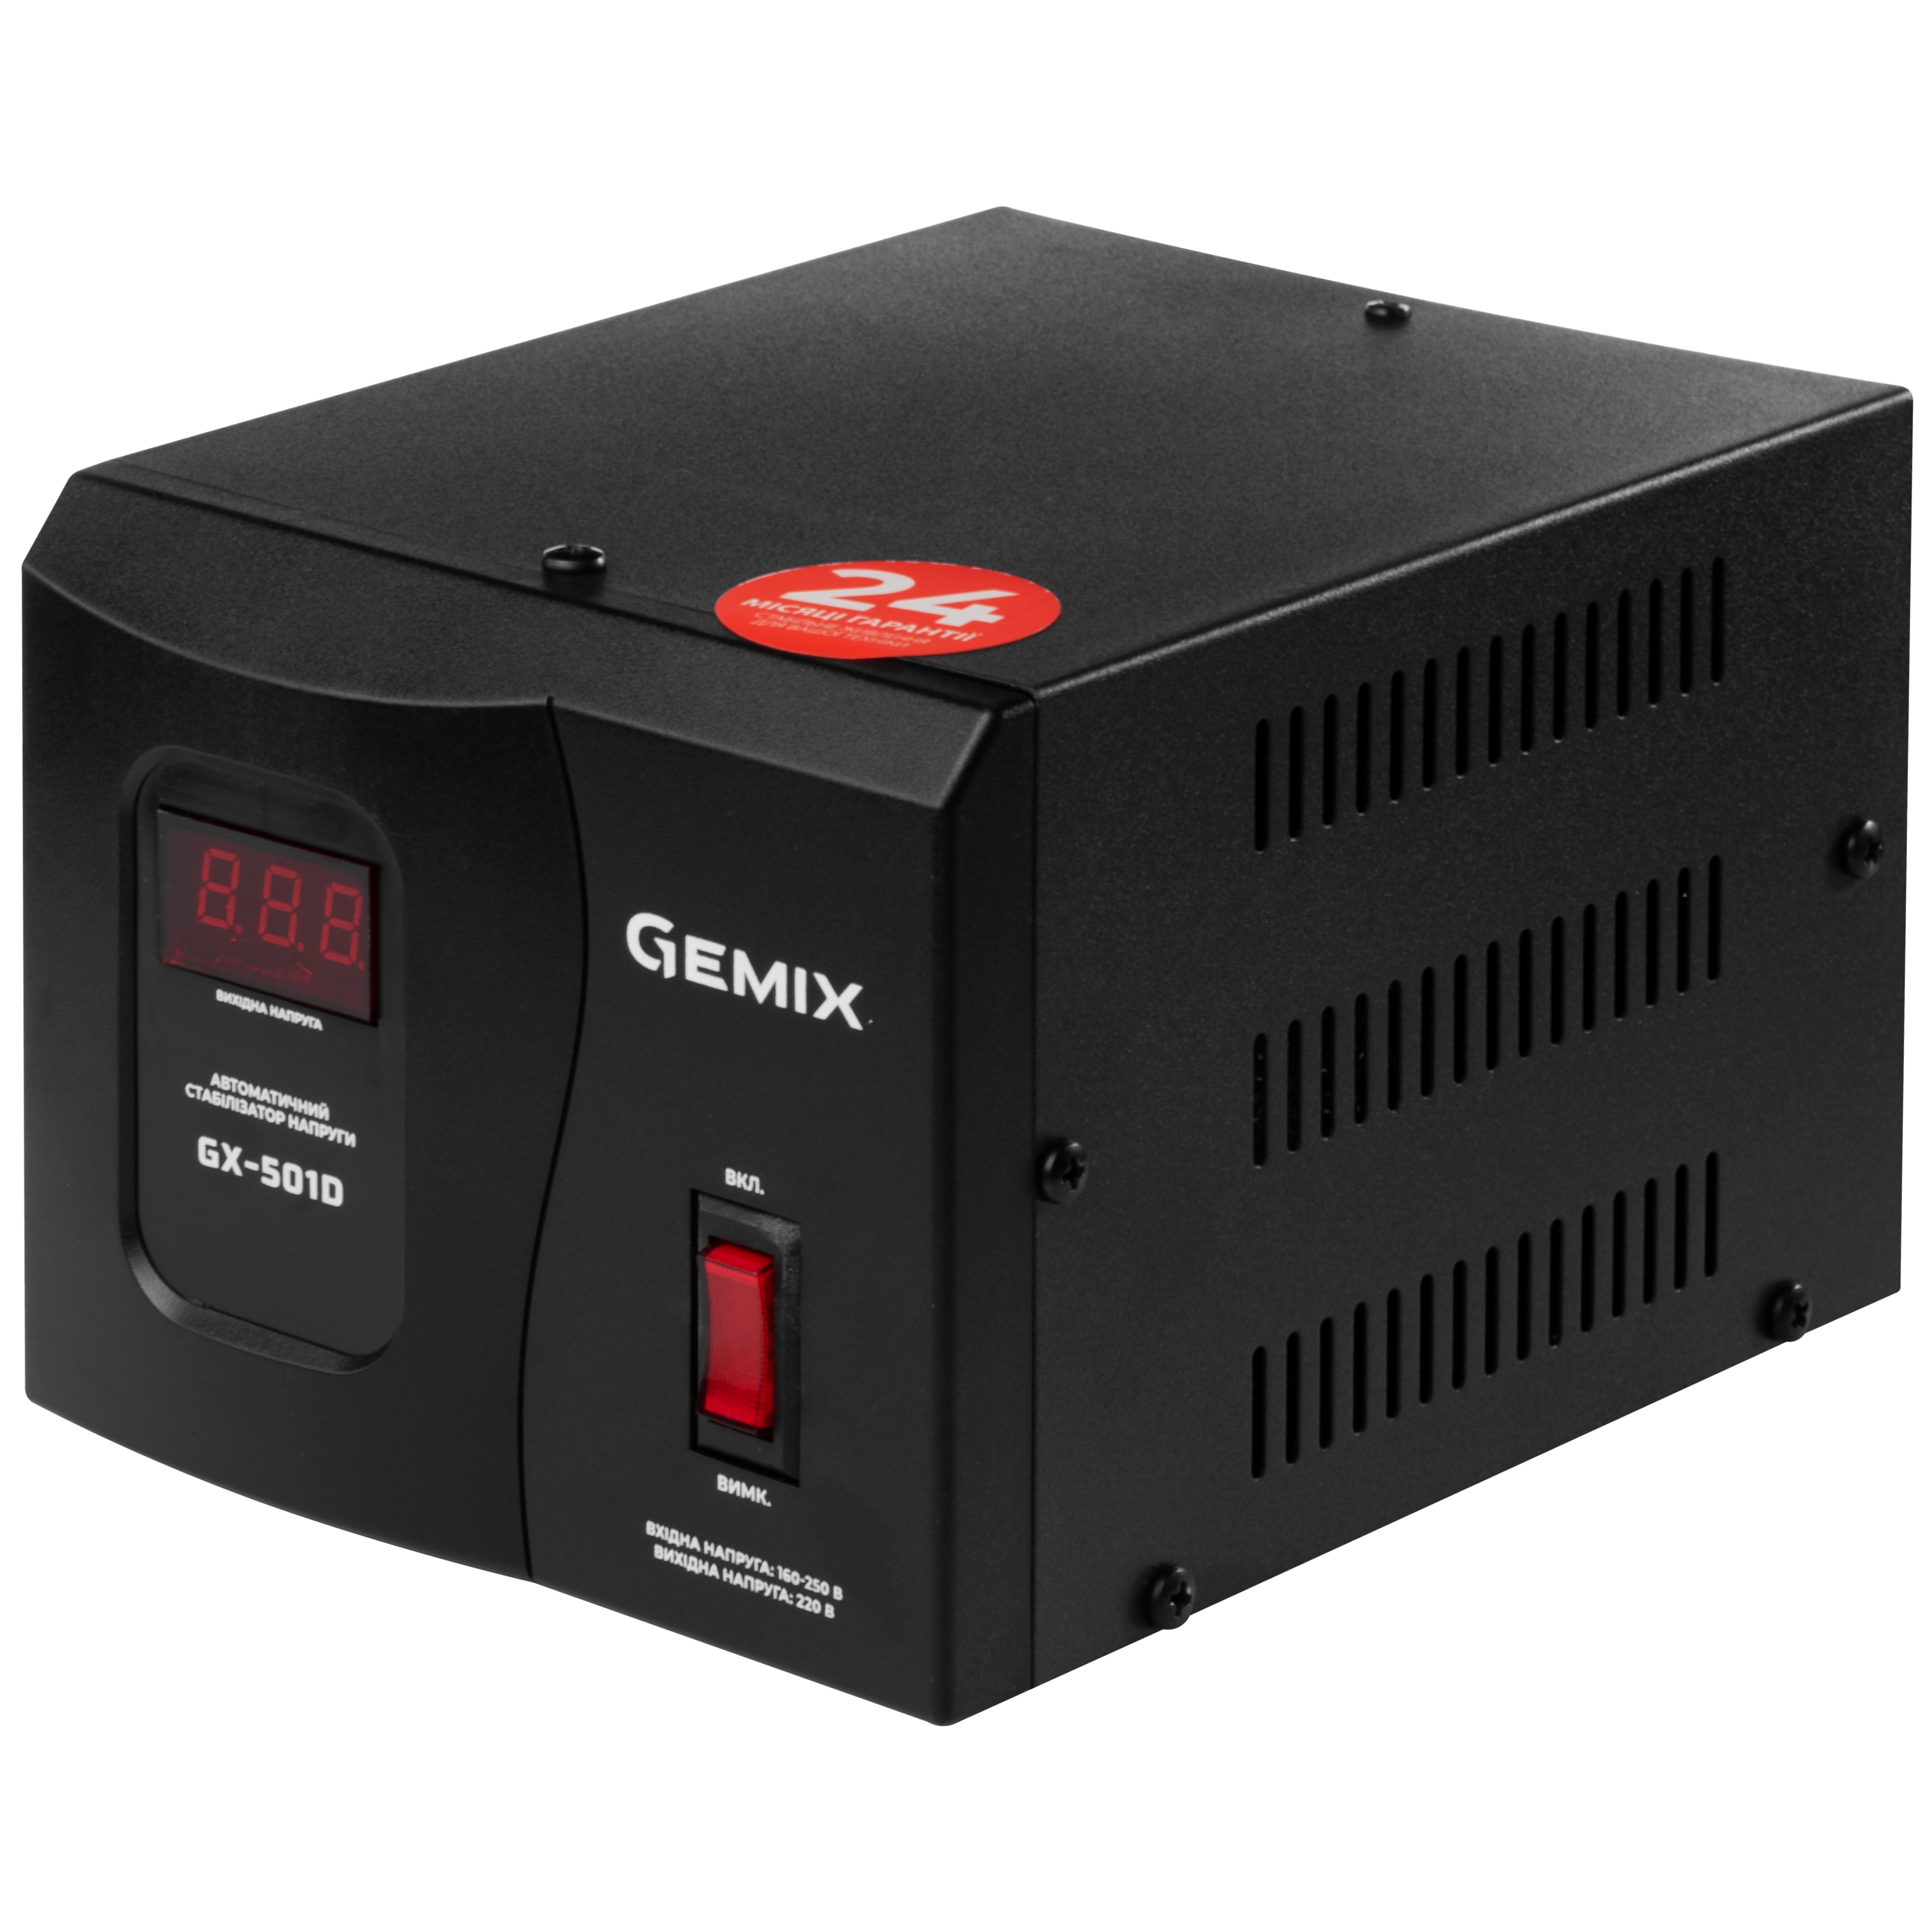 Gemix GX-501D